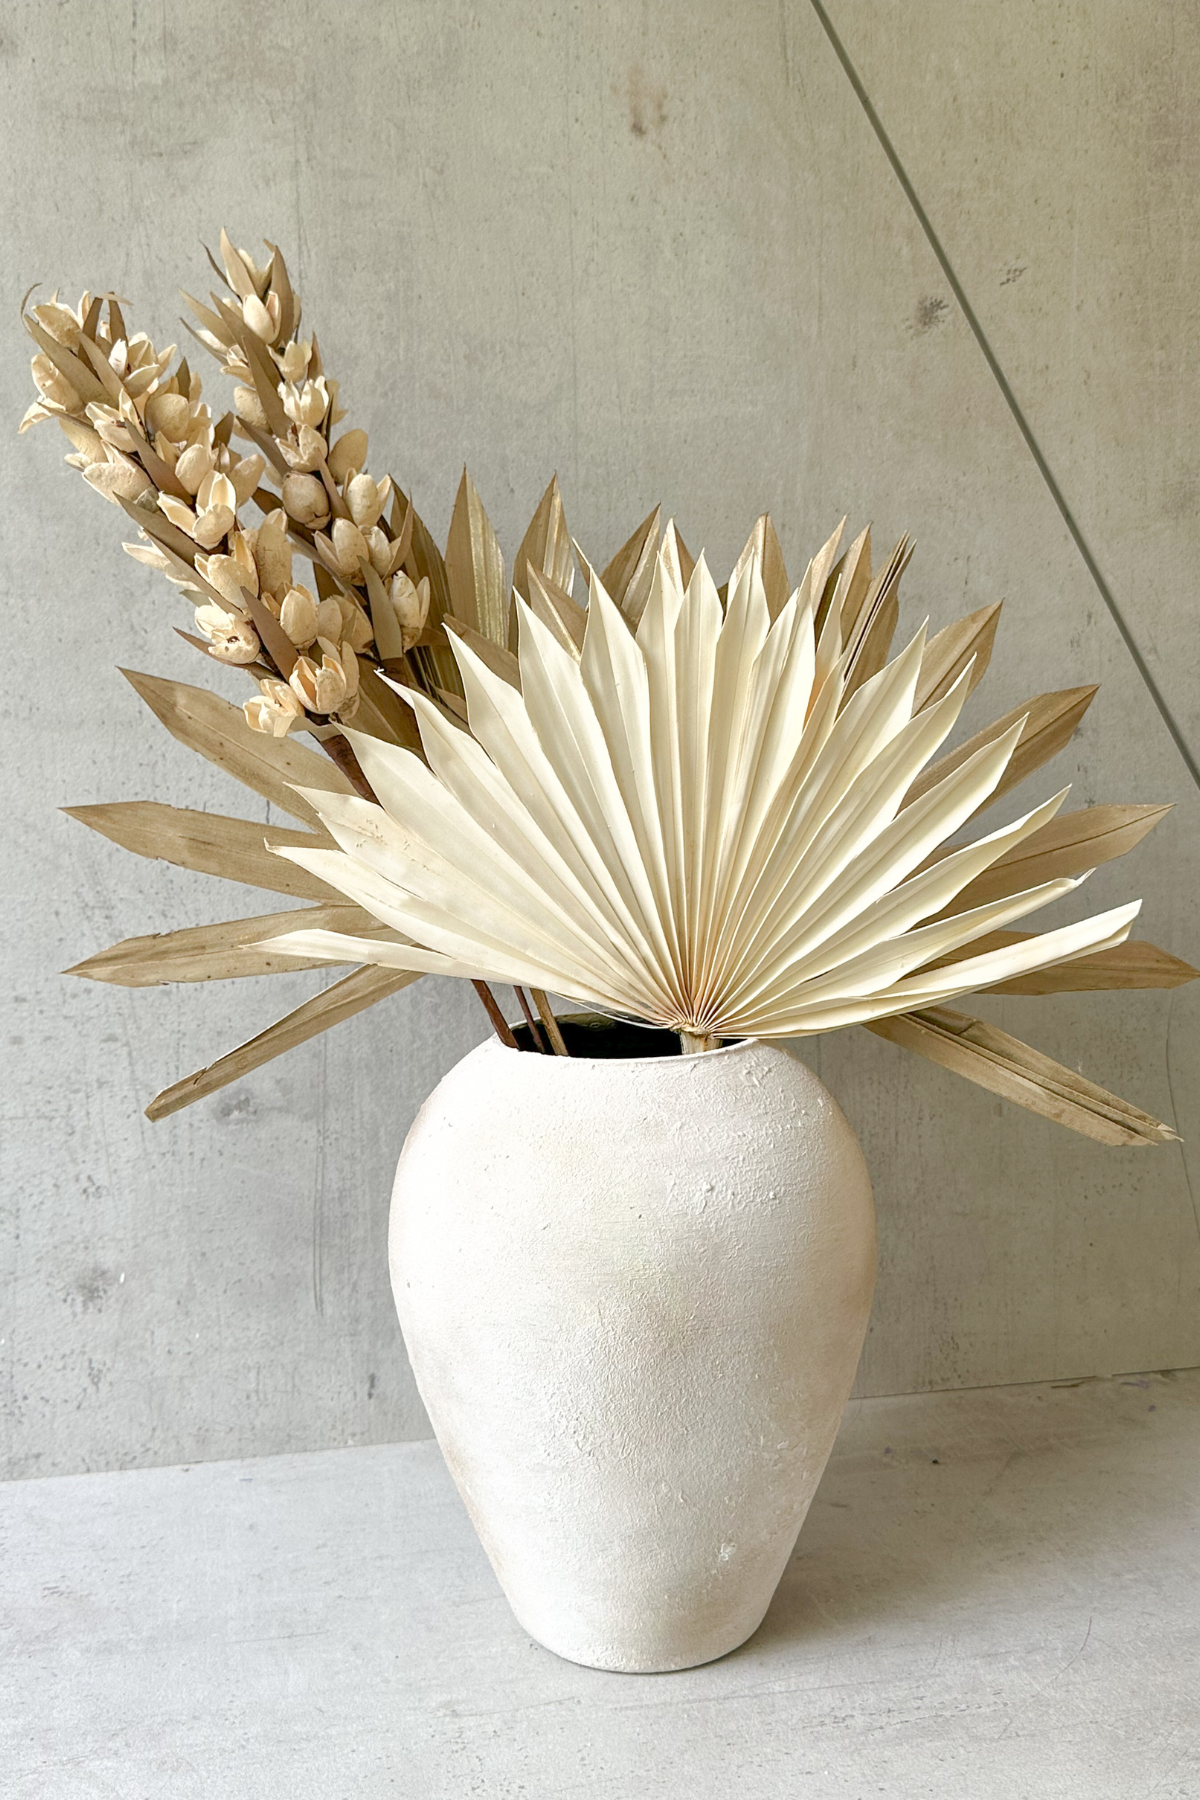 Sun Palm & Bakuli Flower combo